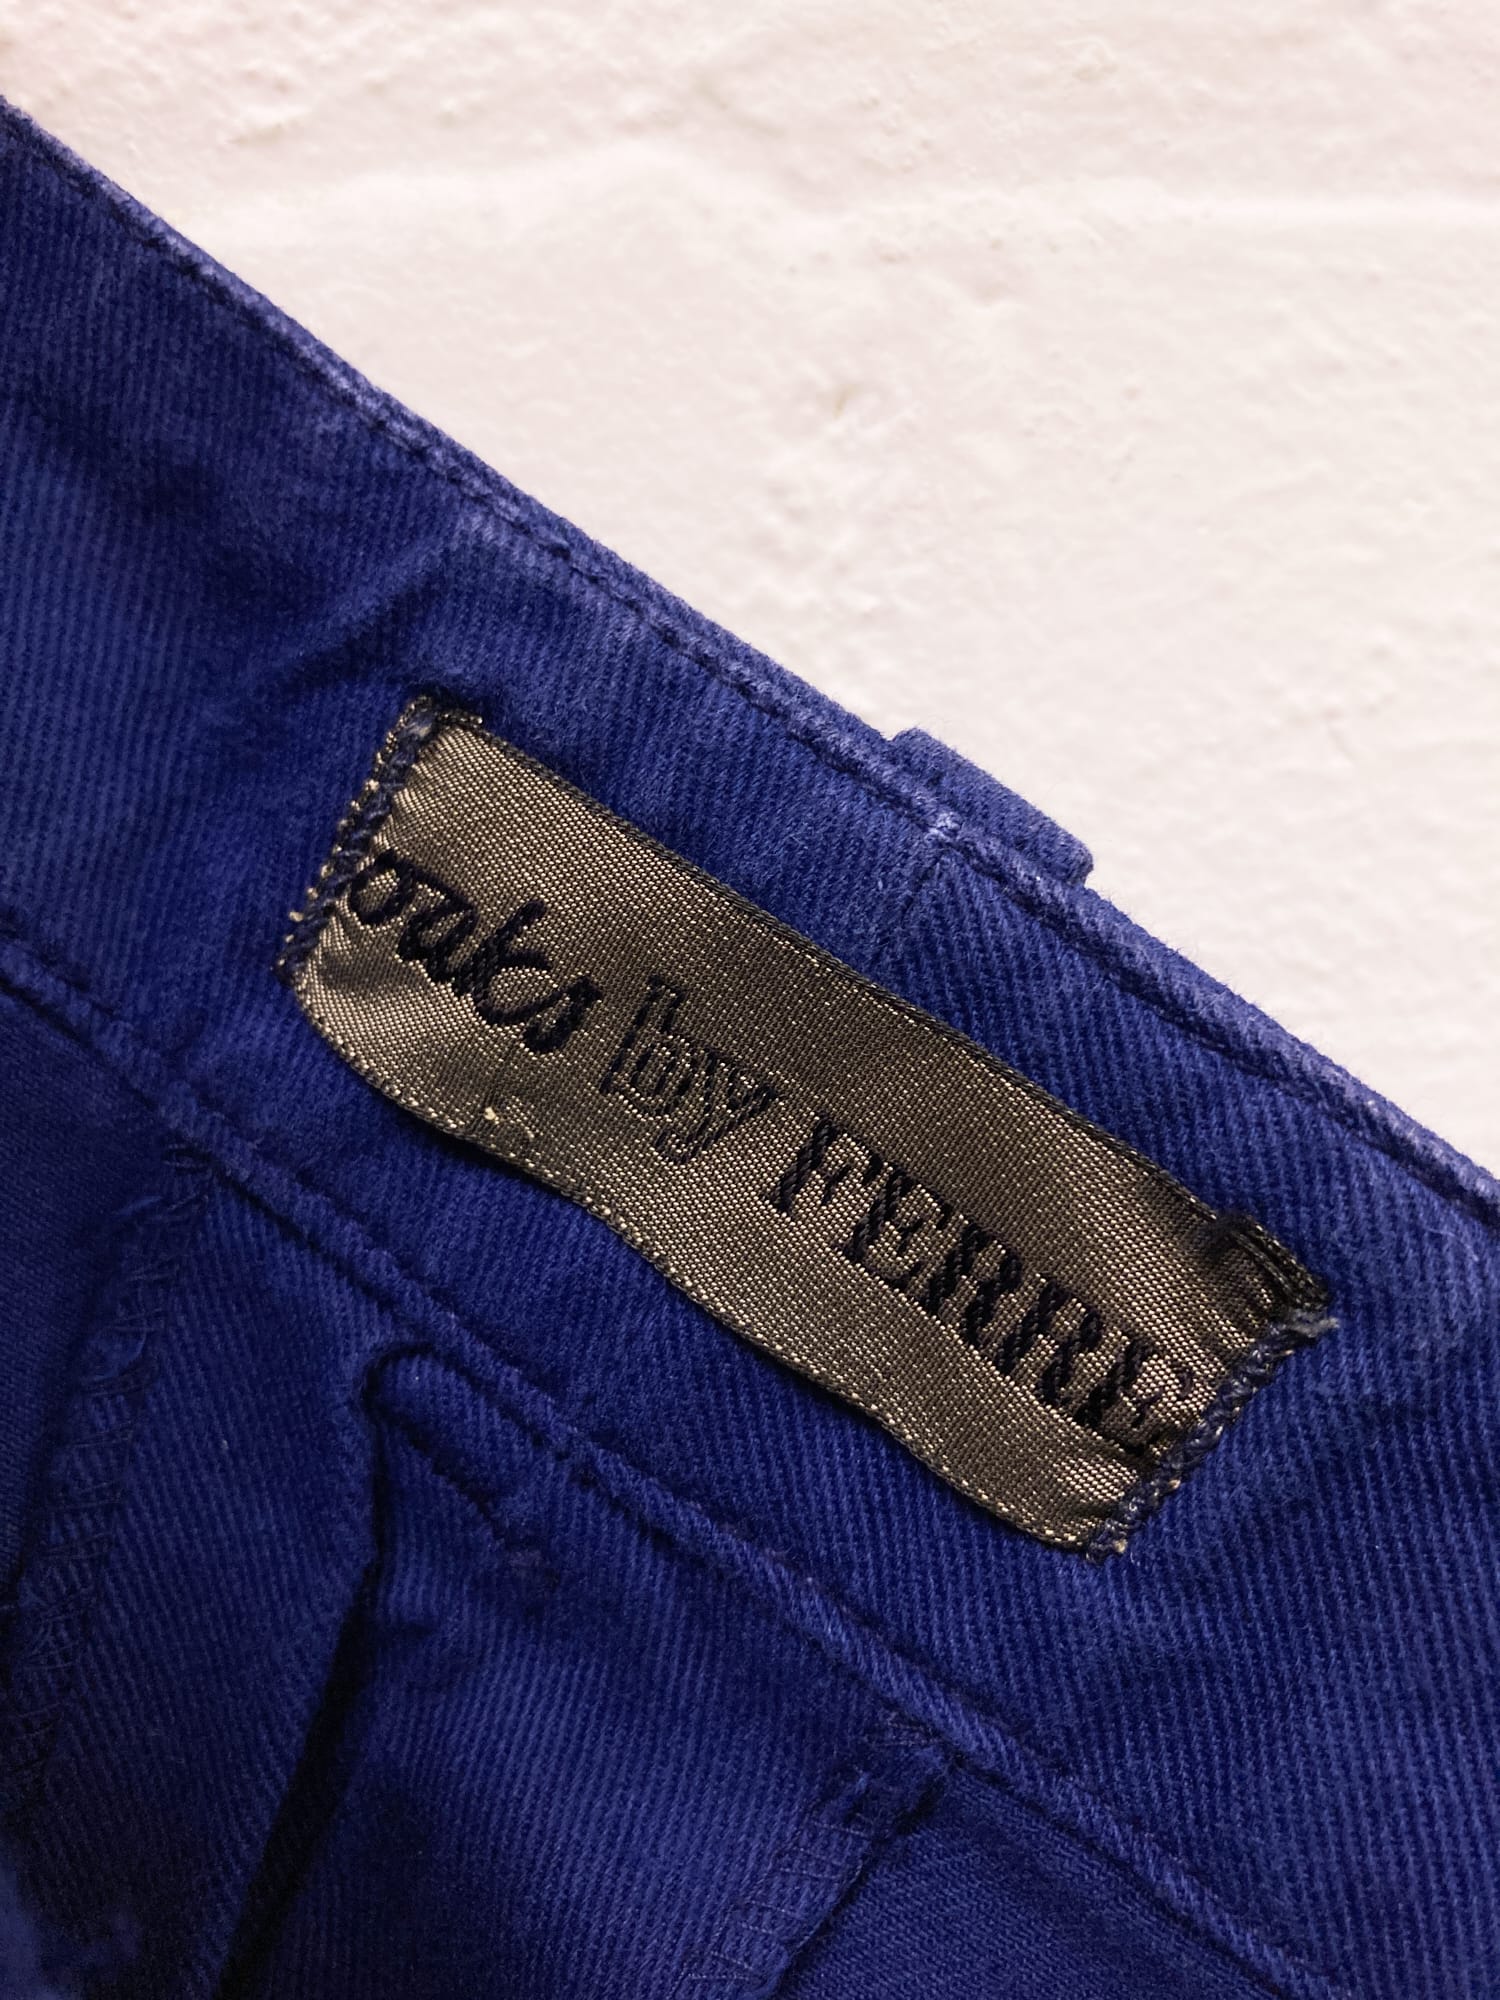 Oaks by Gianfranco Ferre 1980s blue cotton pleated work pants